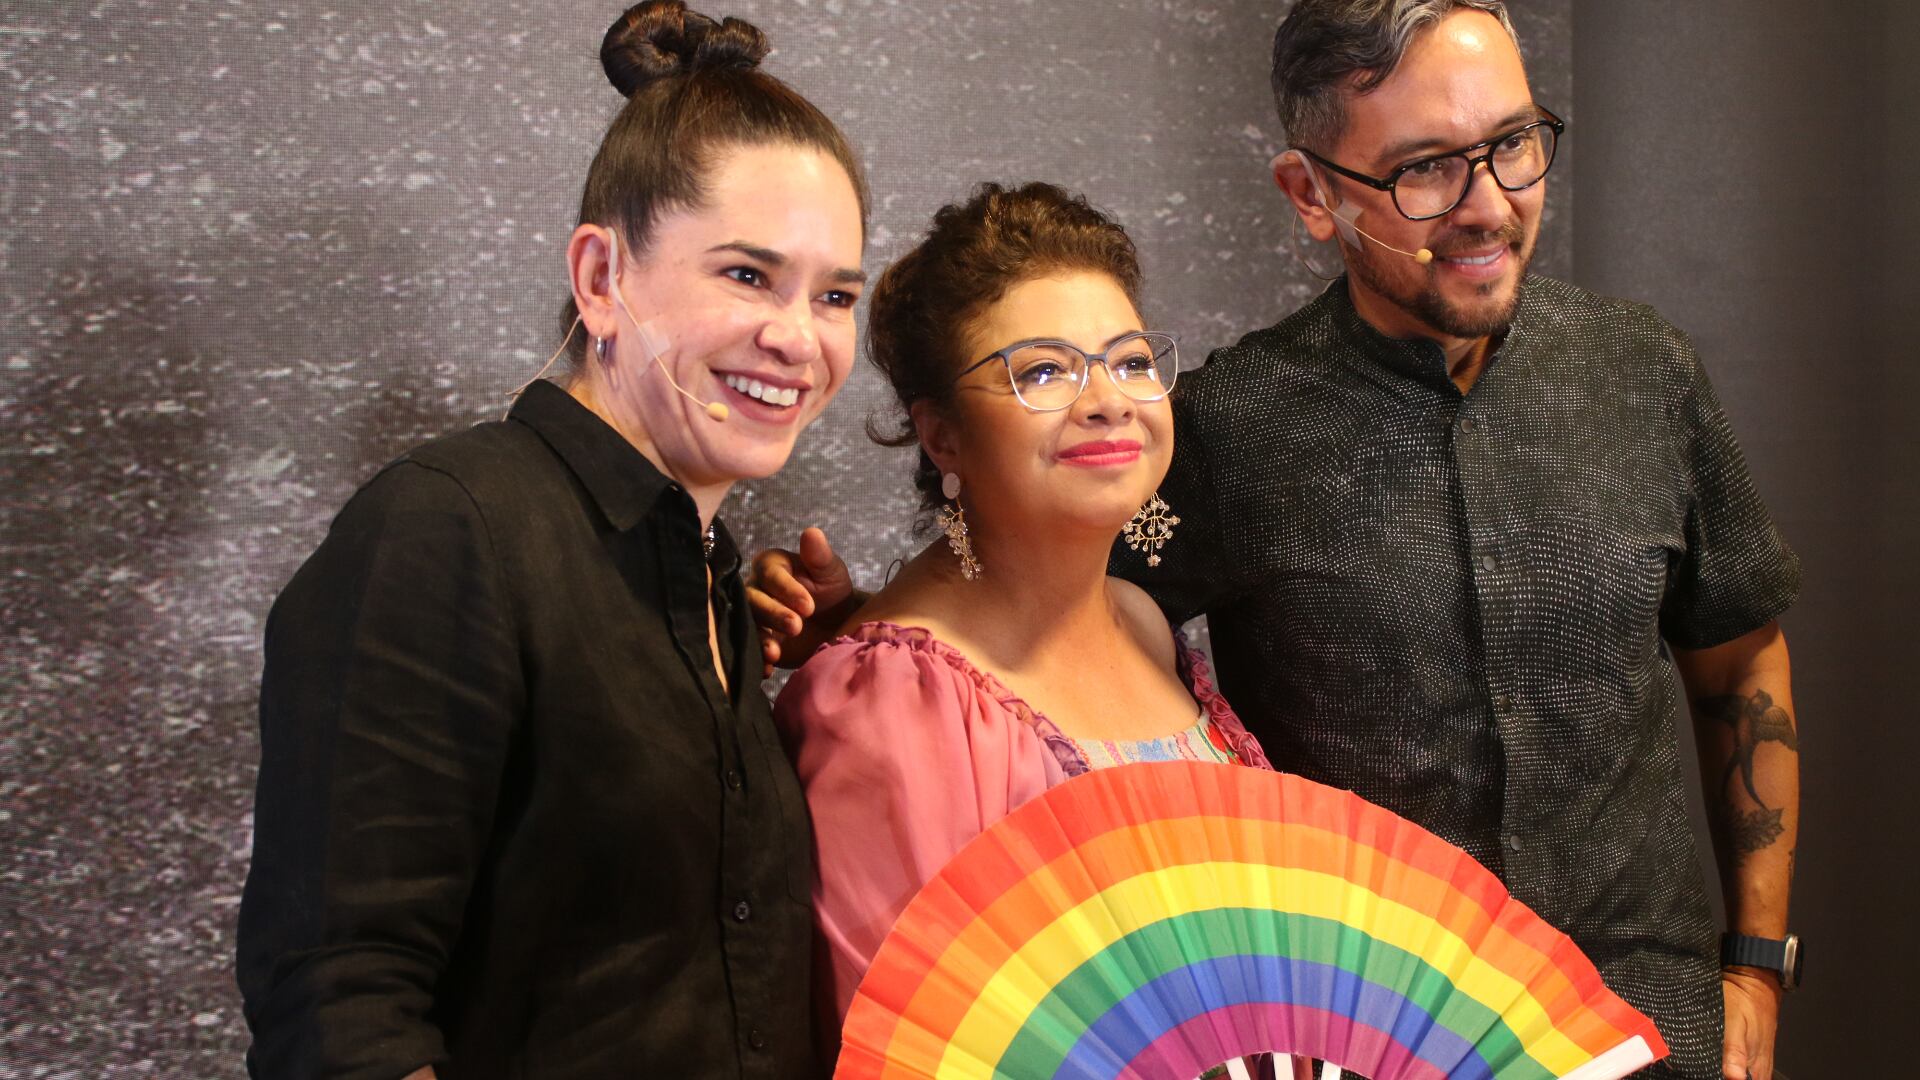 Brugada impulsa erradicar la discriminación contra la comunidad LGBTQ+